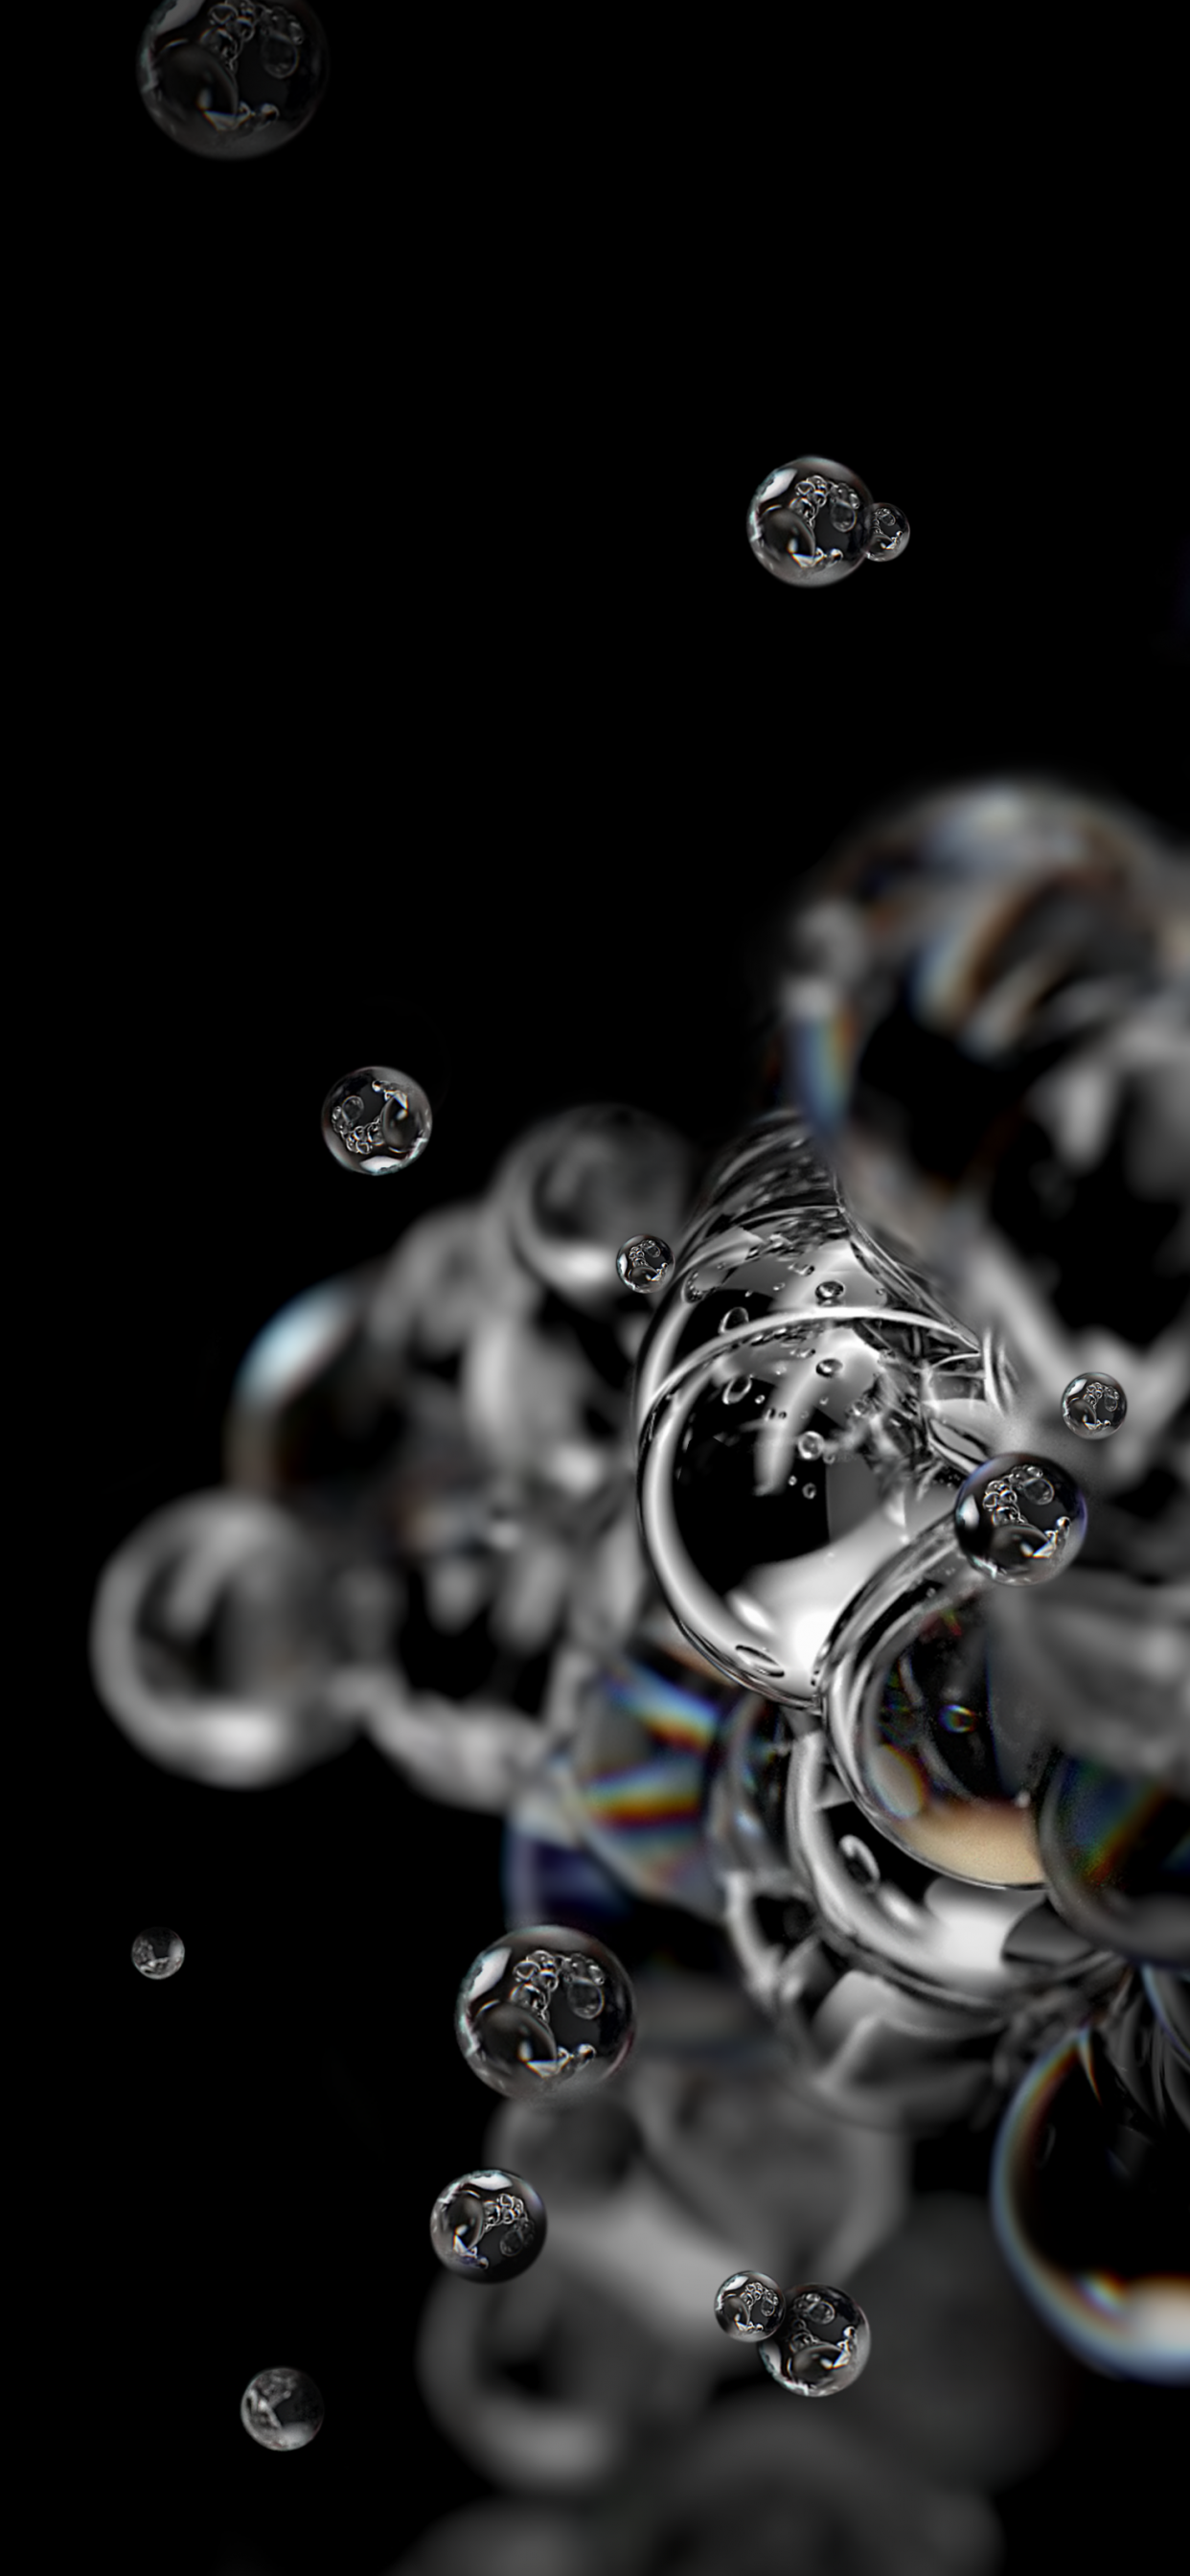 Bubbles: Hãy thưởng thức vẻ đẹp tuyệt vời của bong bóng màu sắc đa dạng. Trò chơi đùa nghịch với những viên bong bóng sẽ khiến bạn thích thú và sảng khoái. Nhấn vào hình để tìm hiểu thêm về bong bóng và cách nghệ thuật tạo hình chúng.